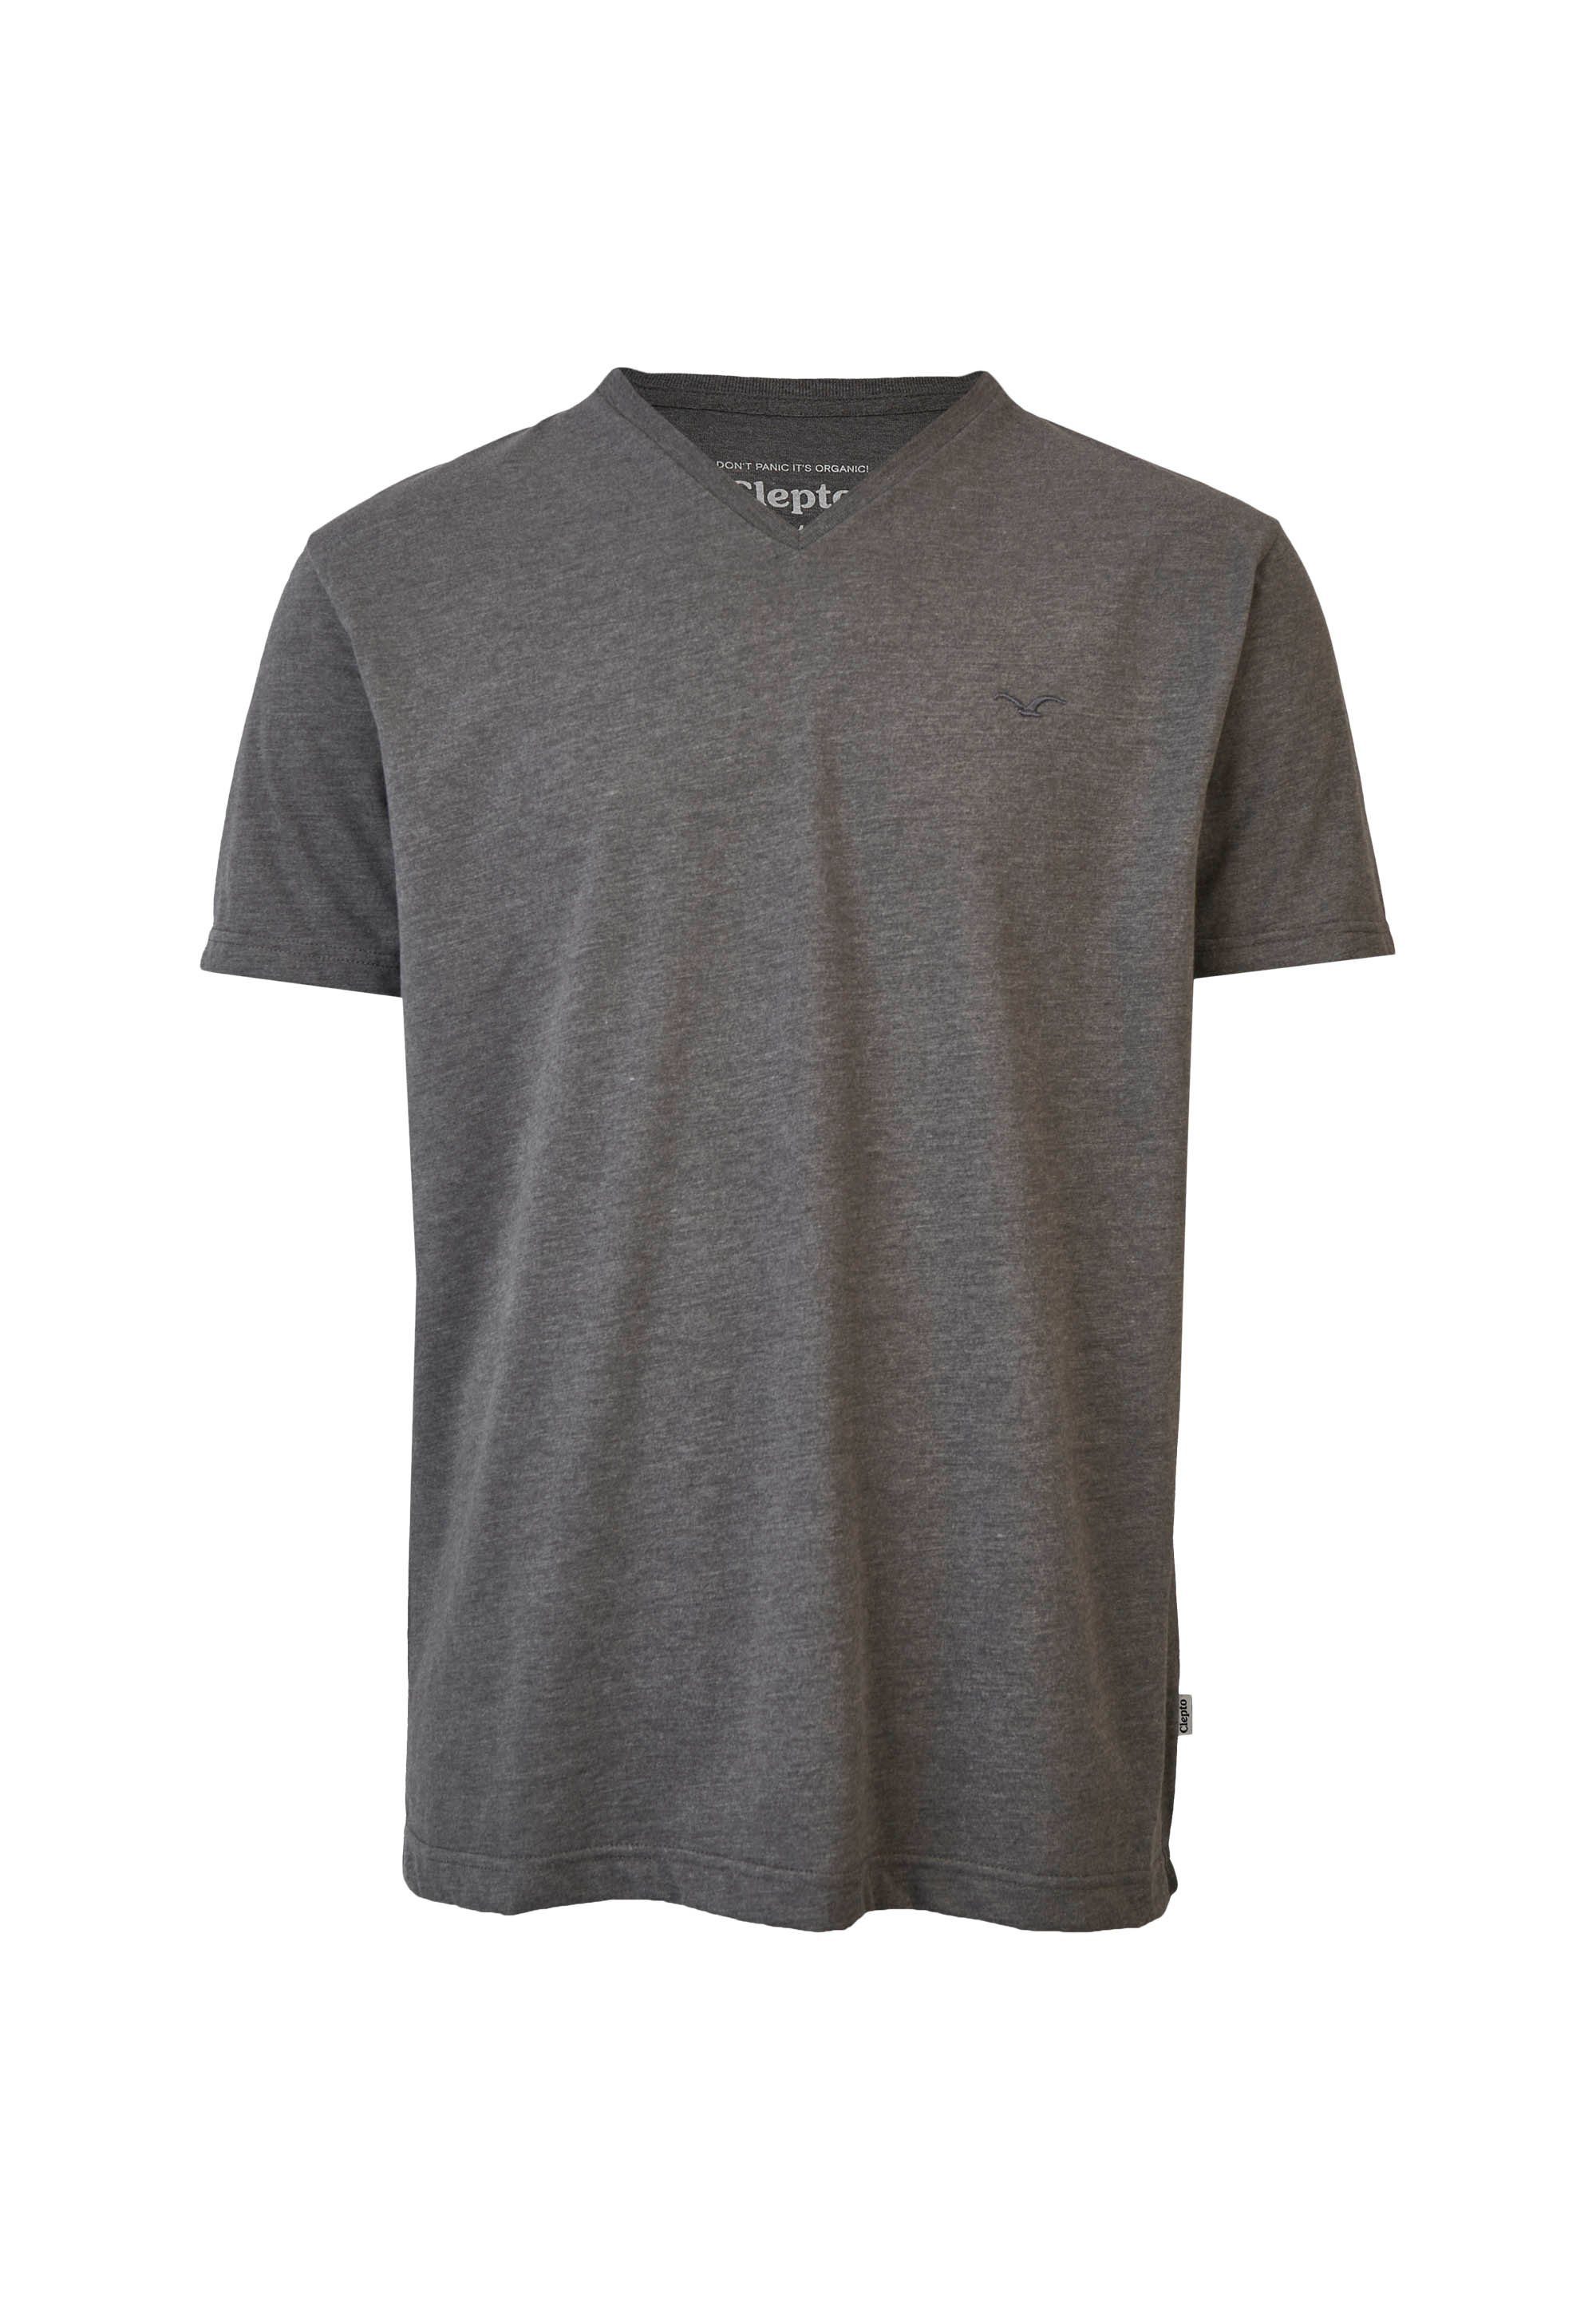 Regular T-Shirt grau-meliert Ligull lockerem Schnitt mit Cleptomanicx V